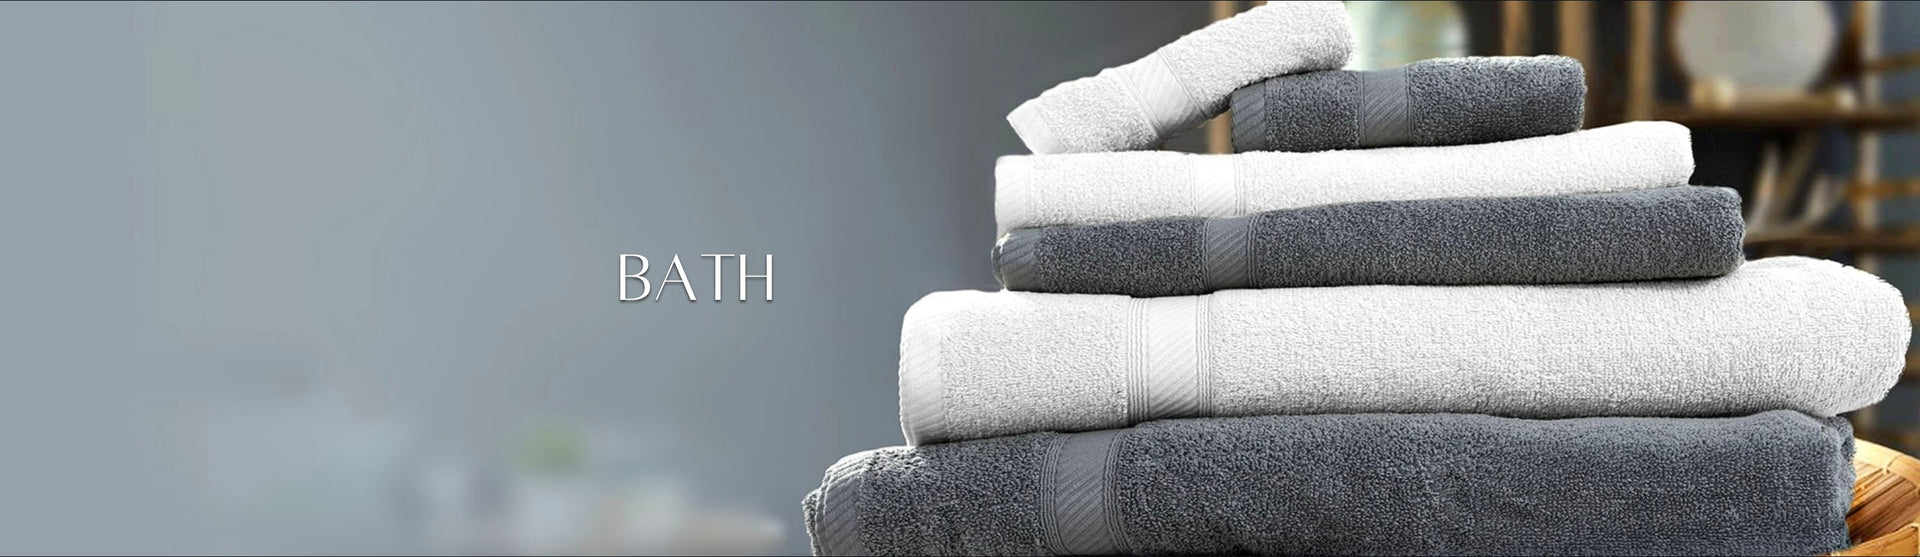 Bath - Towels and Mats